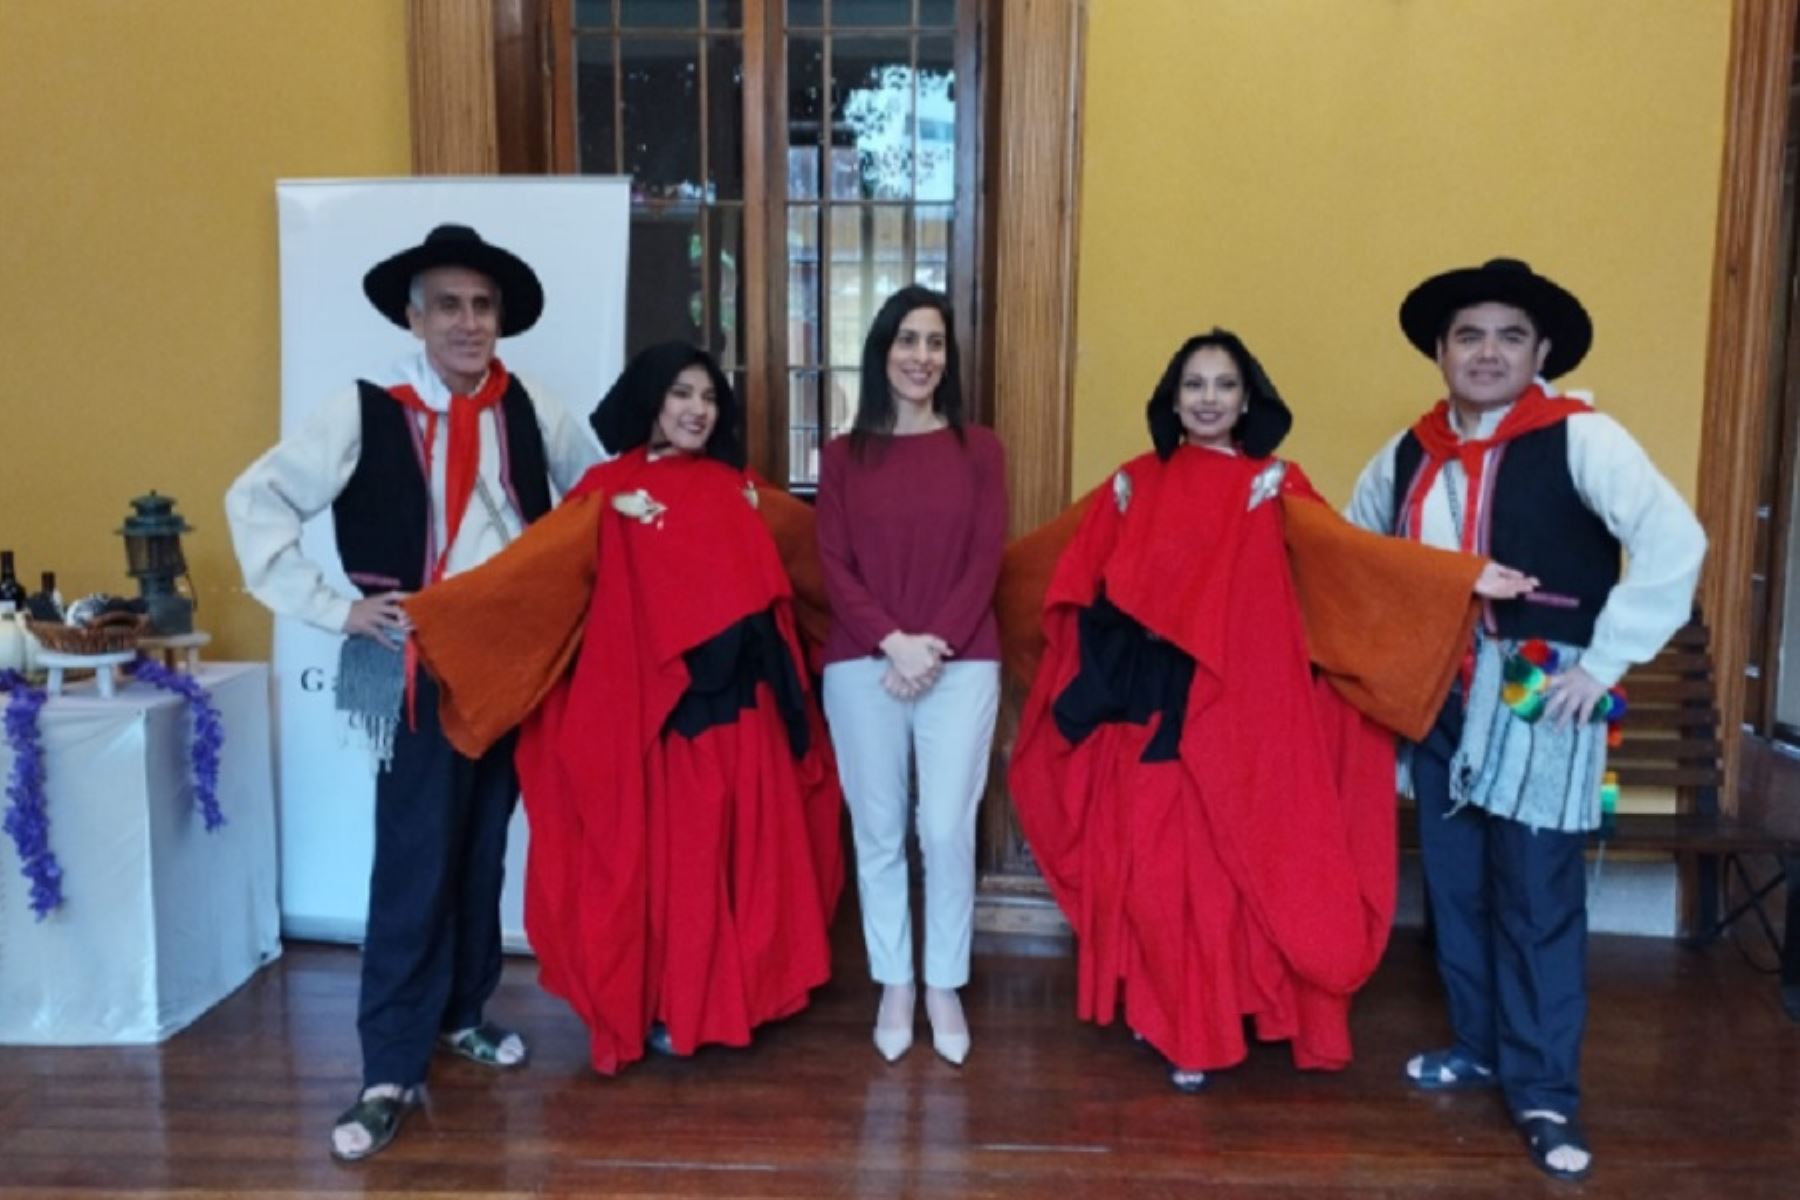 En el marco de la celebración por el 202 aniversario de la independencia del Perú, y con el objetivo de promover el turismo interno y receptivo durante el feriado largo por Fiestas Patrias, representantes de PromPerú, liderados por la directora de Promoción del Turismo, Claricia Tirado Díaz, presentaron en la ciudad de Tacna la campaña nacional "El turismo ayuda".